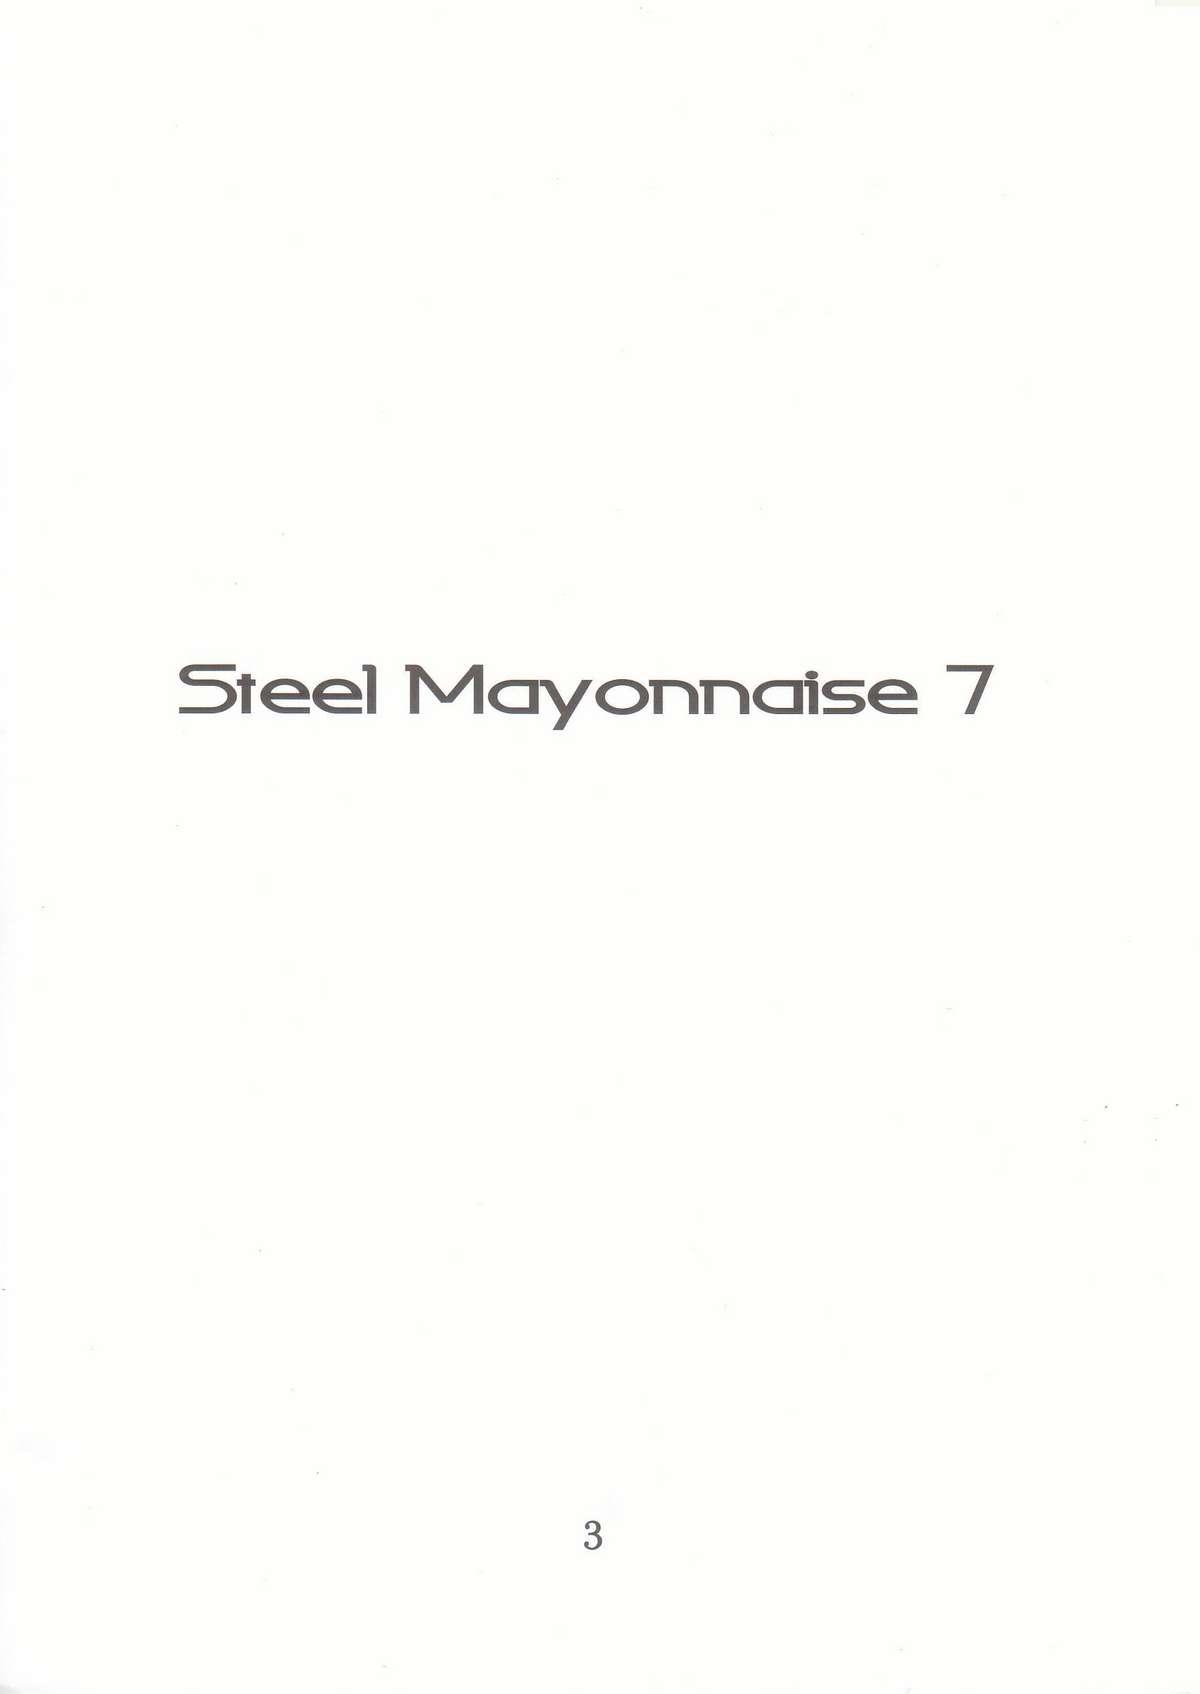 SteelMayannaise7 1